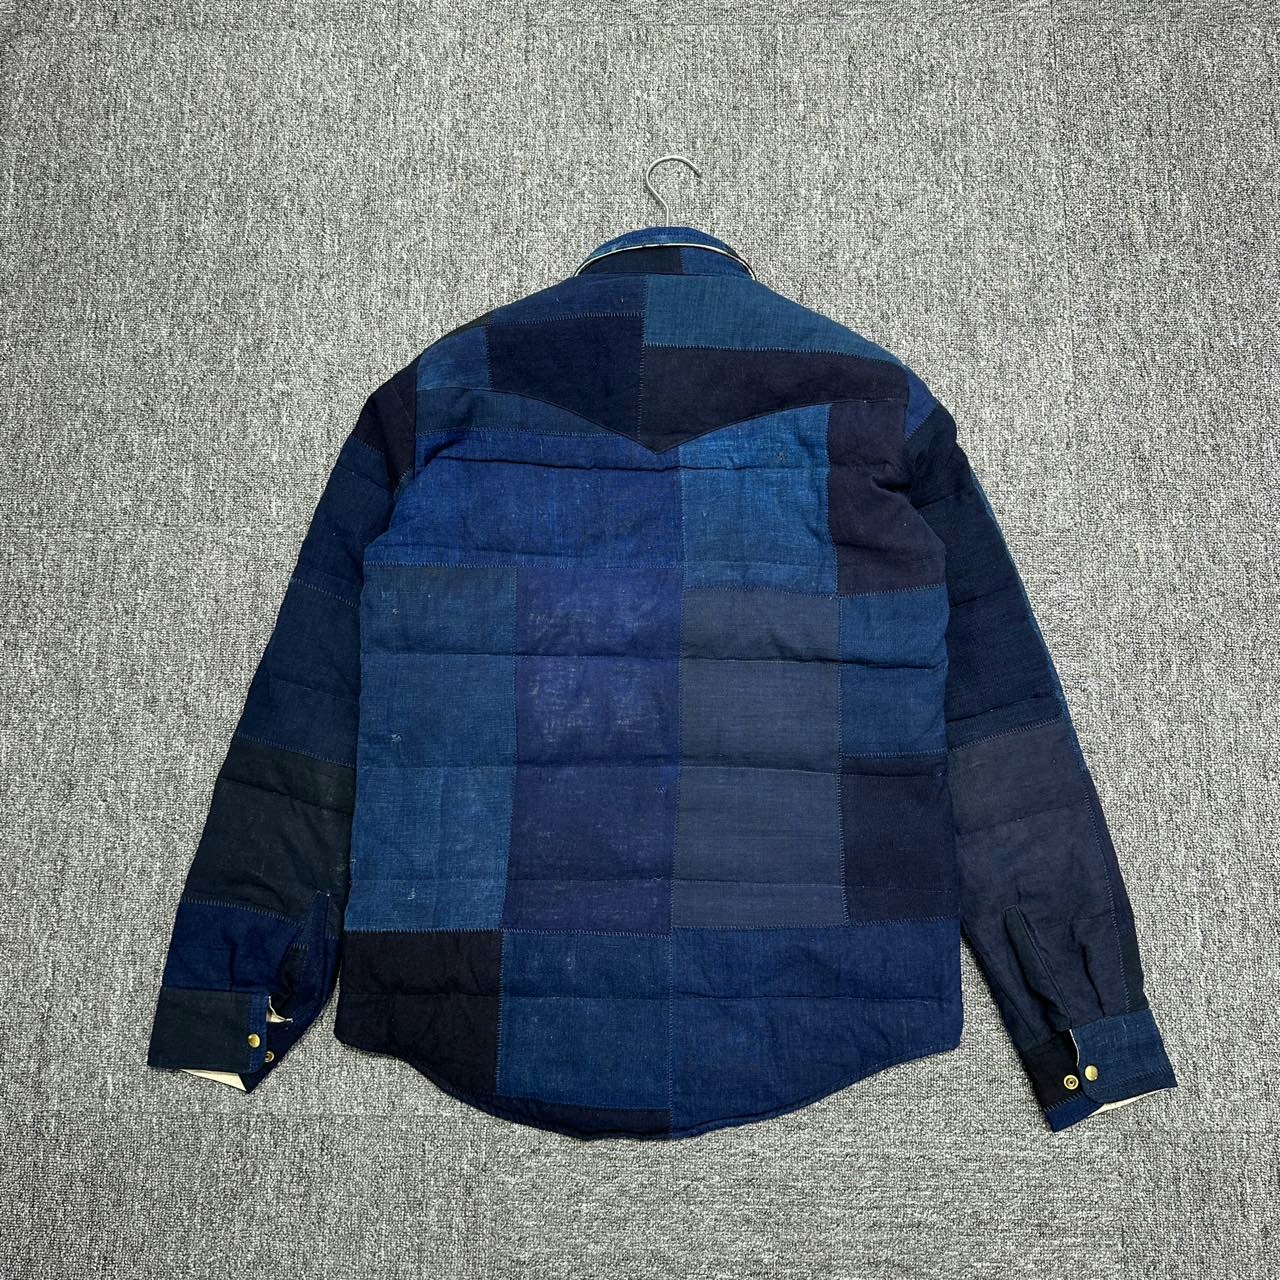 Visvim WMV Vintage Fabric Patchwork Cotton Jacket - 2